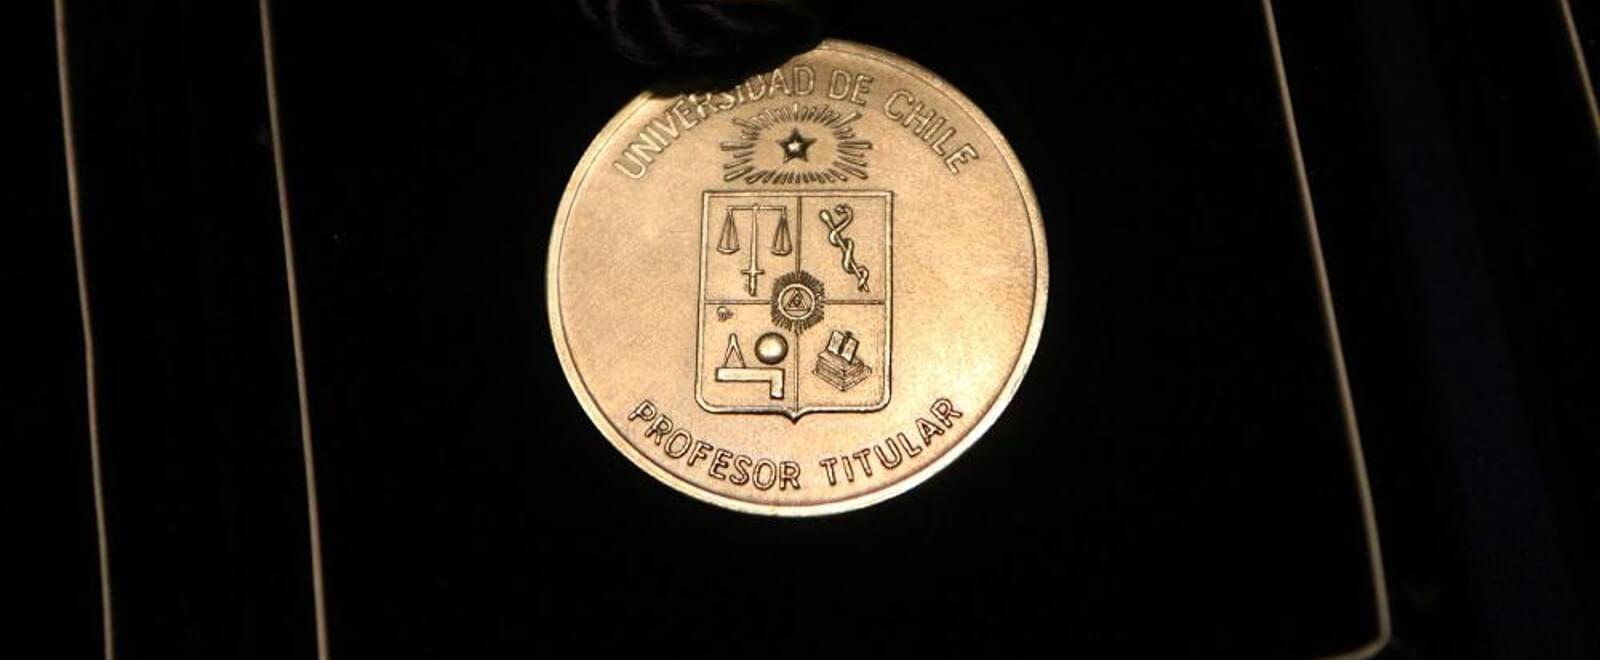 Medalla prof. titular